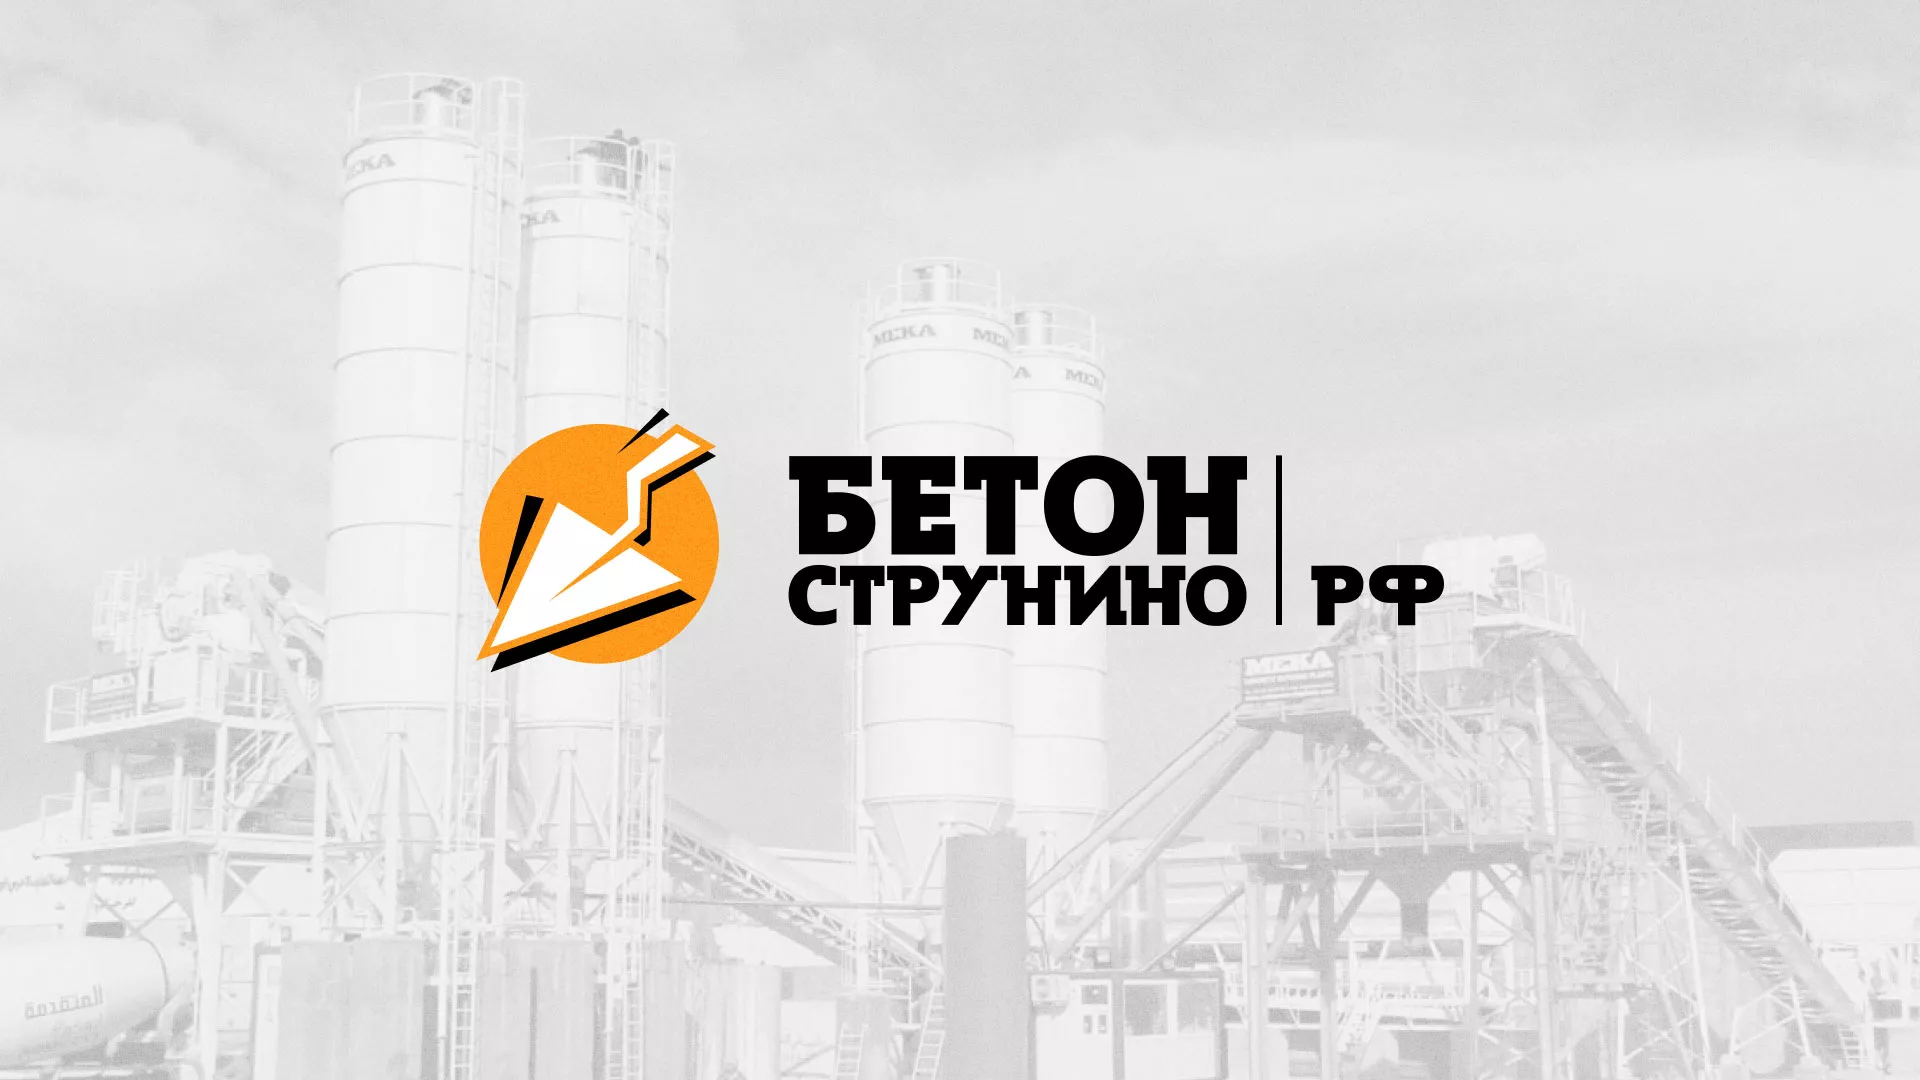 Разработка логотипа для бетонного завода в Шахтёрске